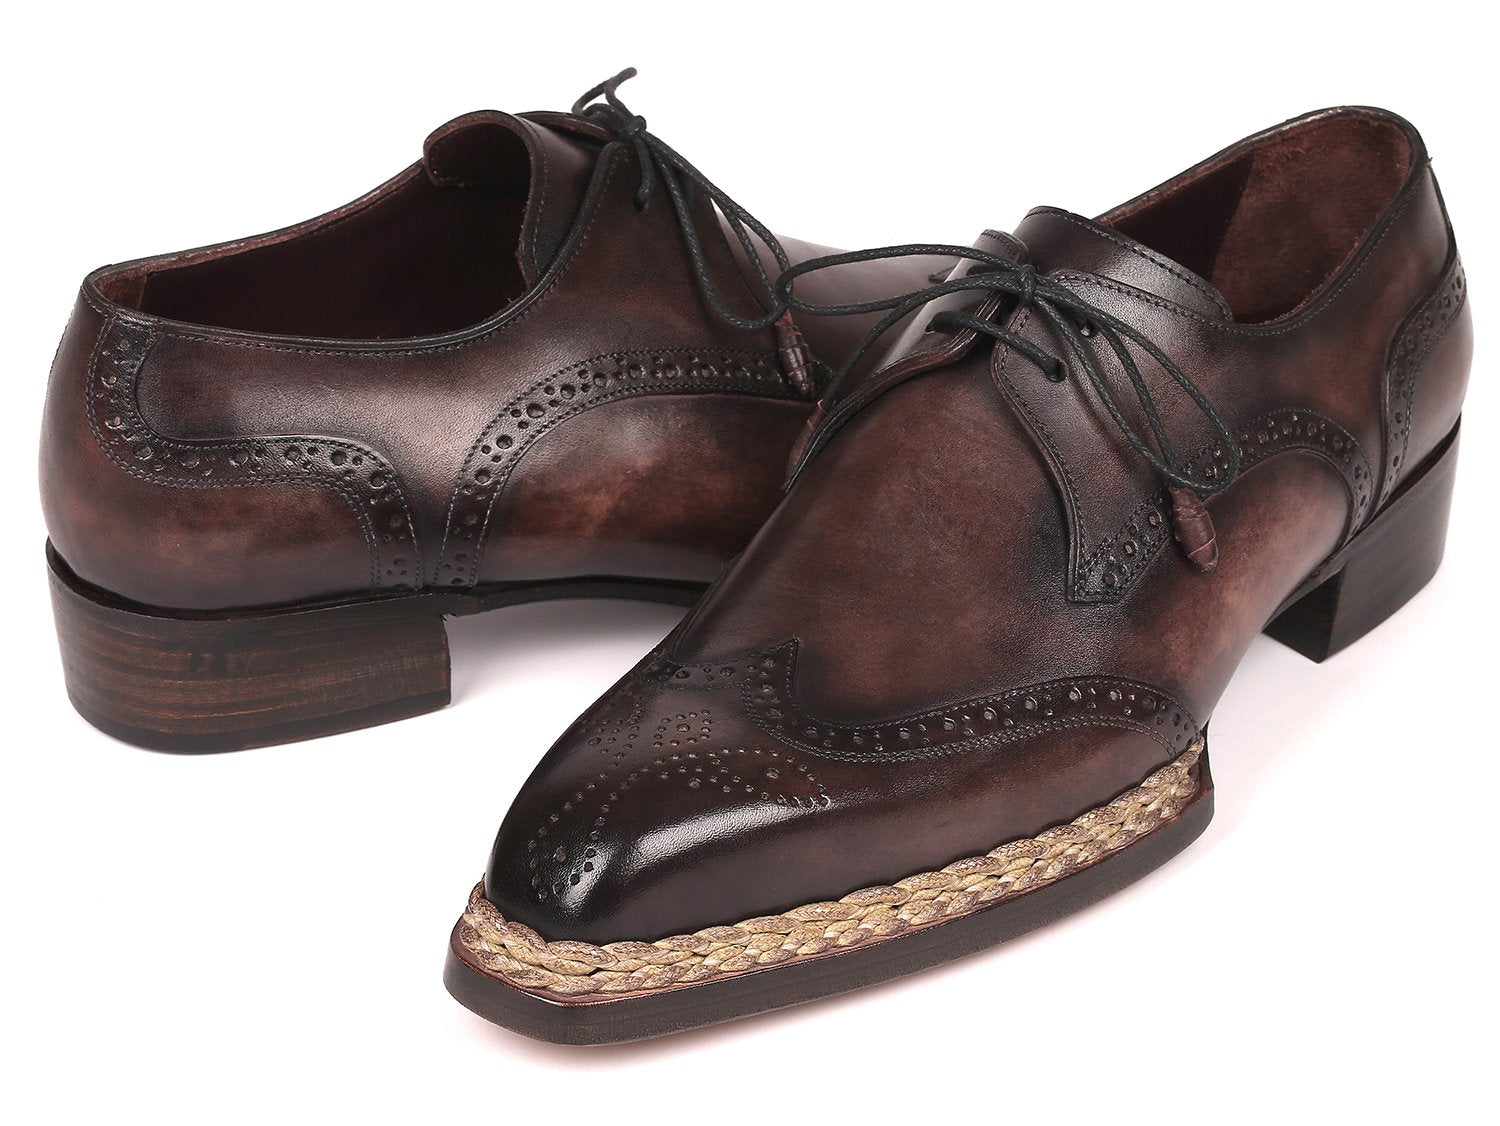 Paul Parkman Norwegian Welted Wingtip Derby Shoes Bronze - 8506-BRZ